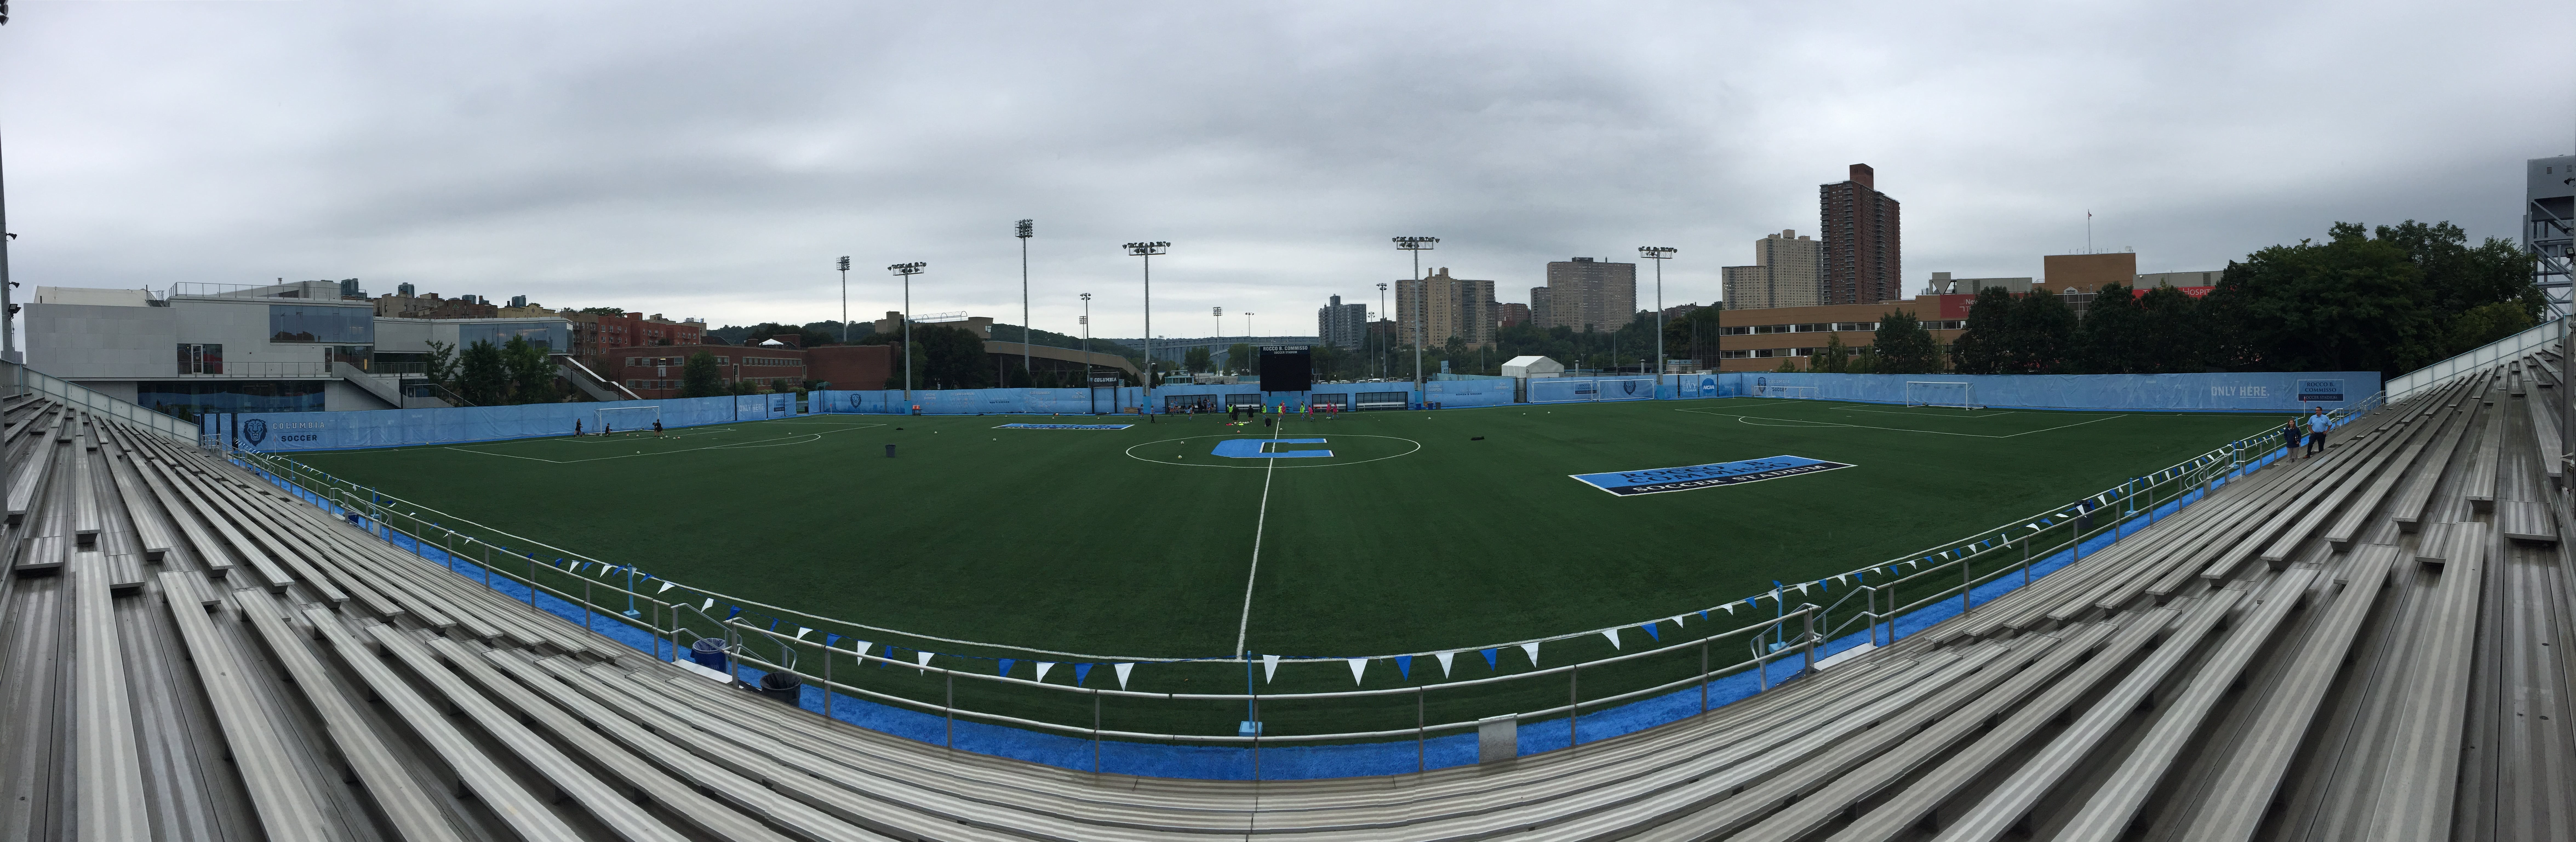 Columbia University - Mesh Windscreens Soccer Stadium Pano